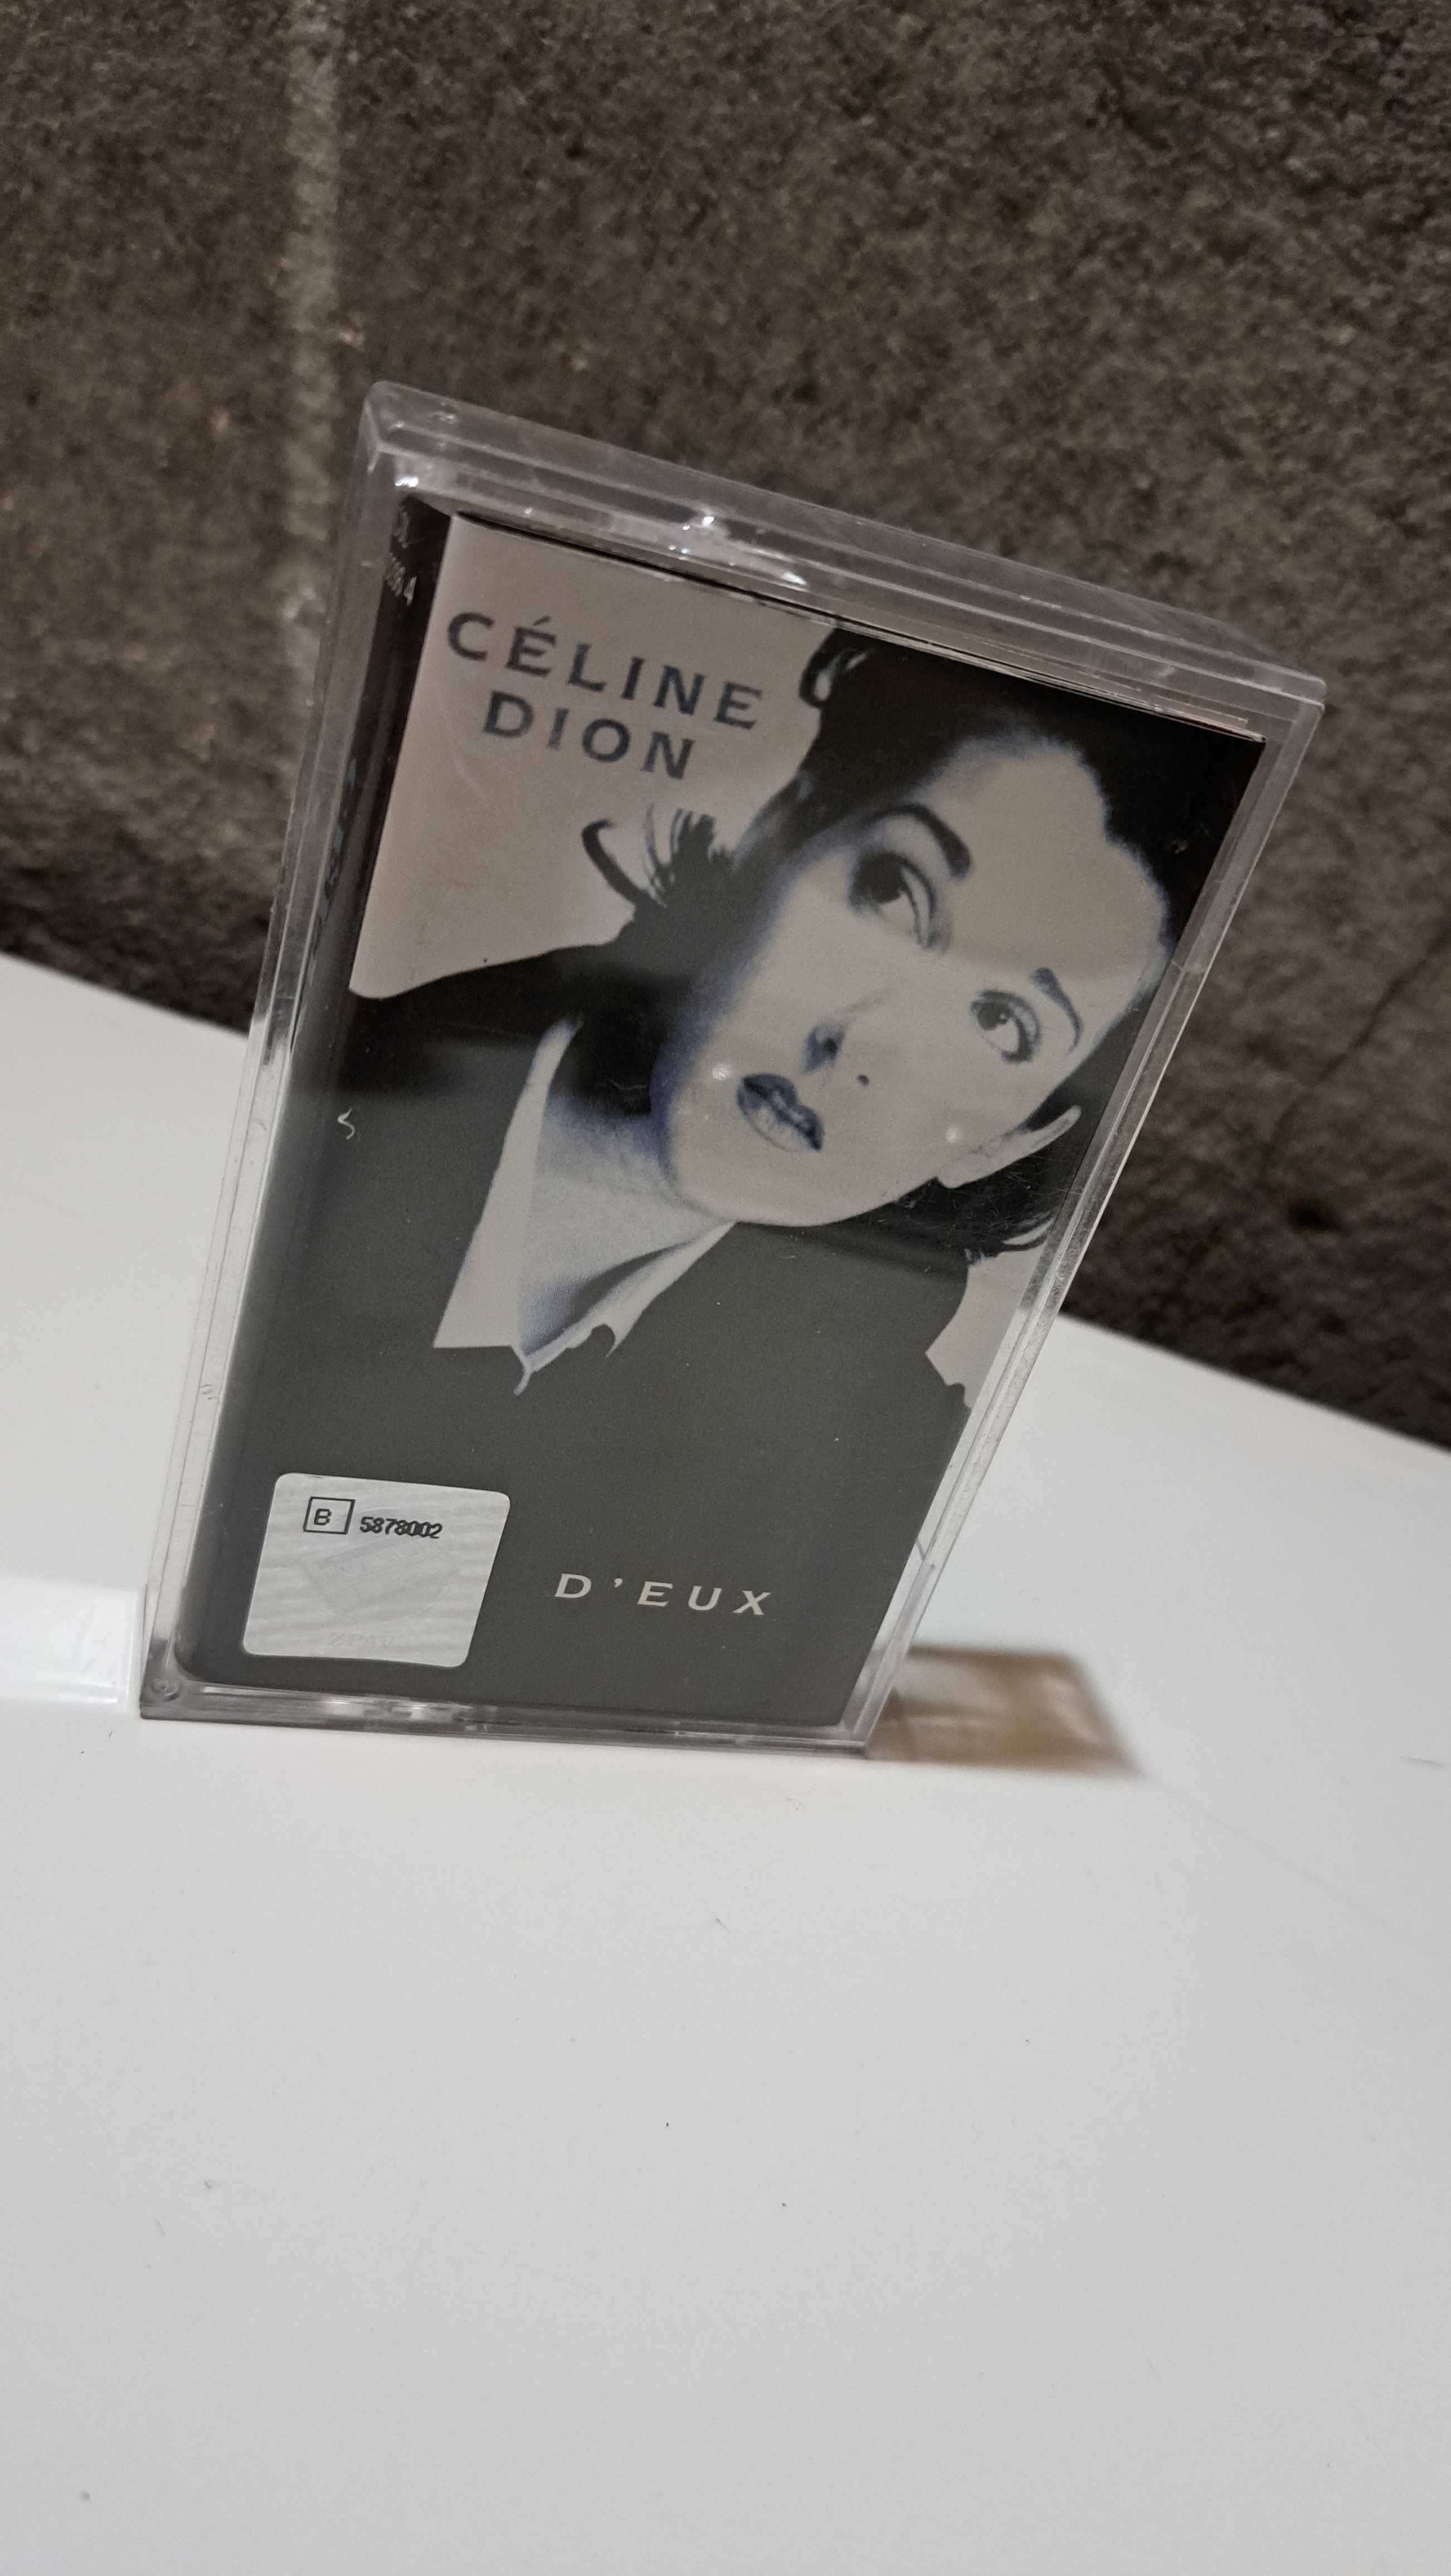 Celine Dion D'Eux DEUX kaseta audio